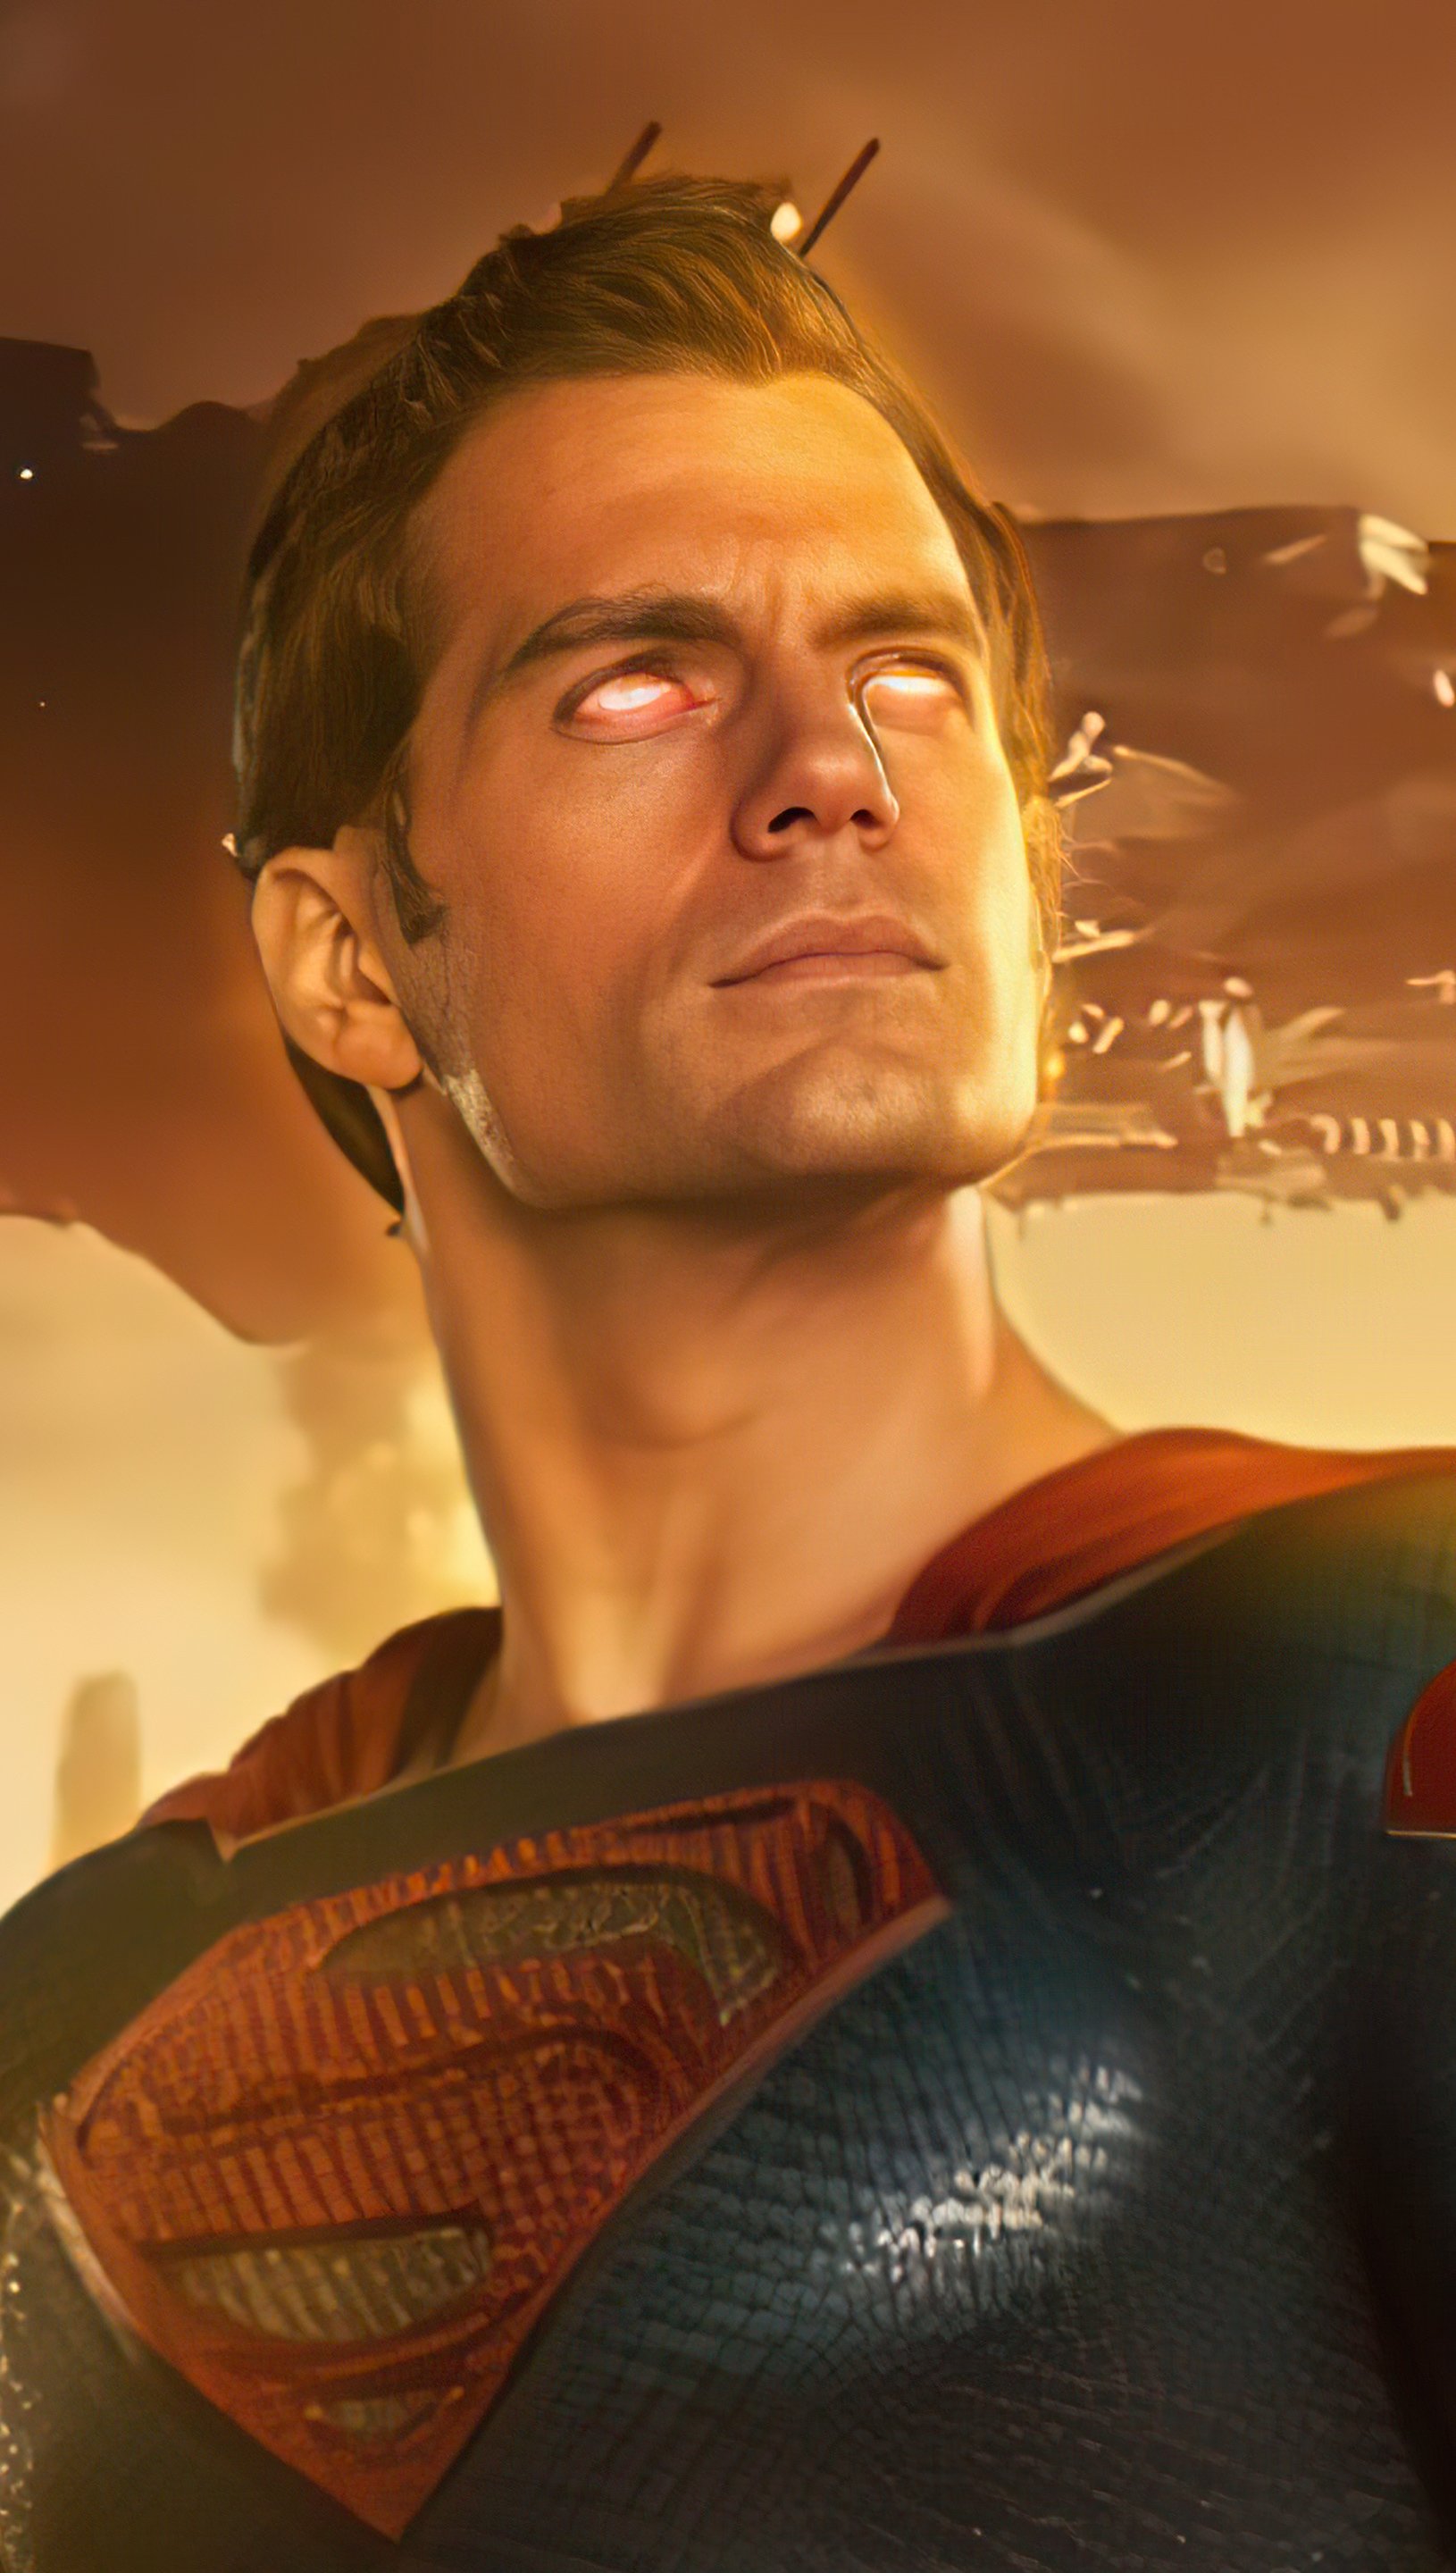 Henry Cavill as Superman Wallpaper 5k HD ID:8297